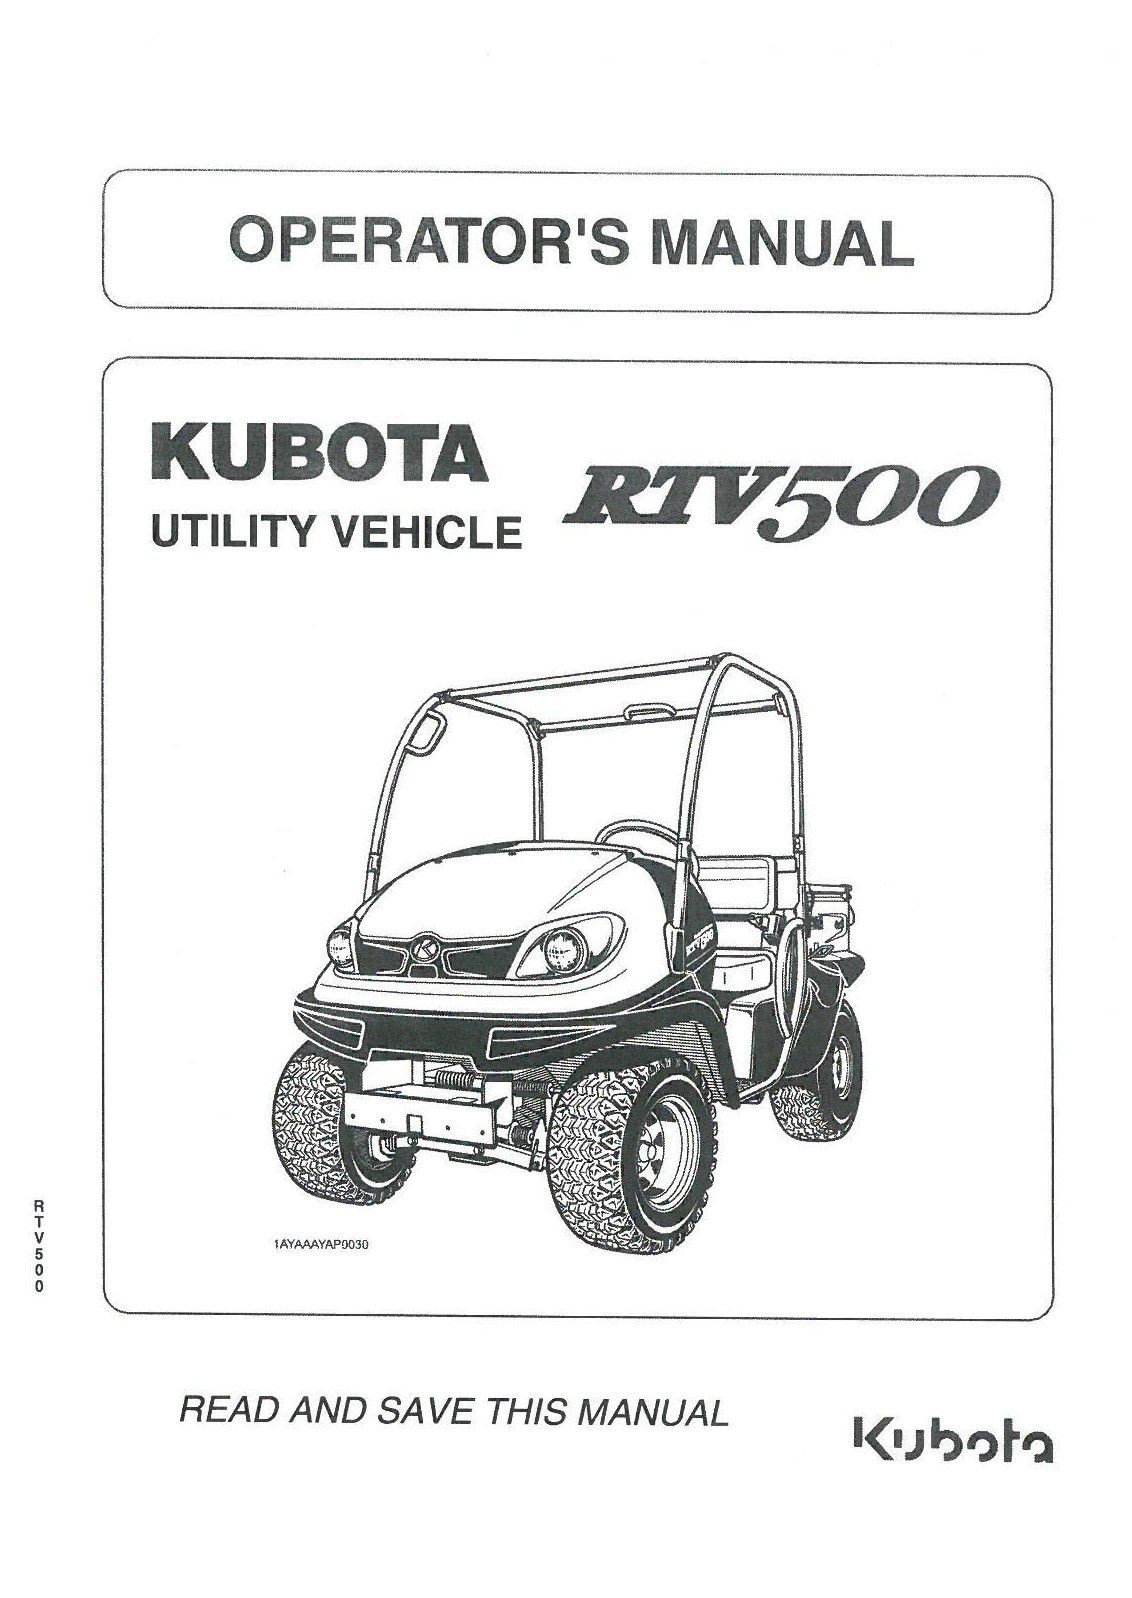 Kubota Rtv 500 Engine Diagram Kubota Utility Vehicle Rtv500 Operators Manual Rtv 500